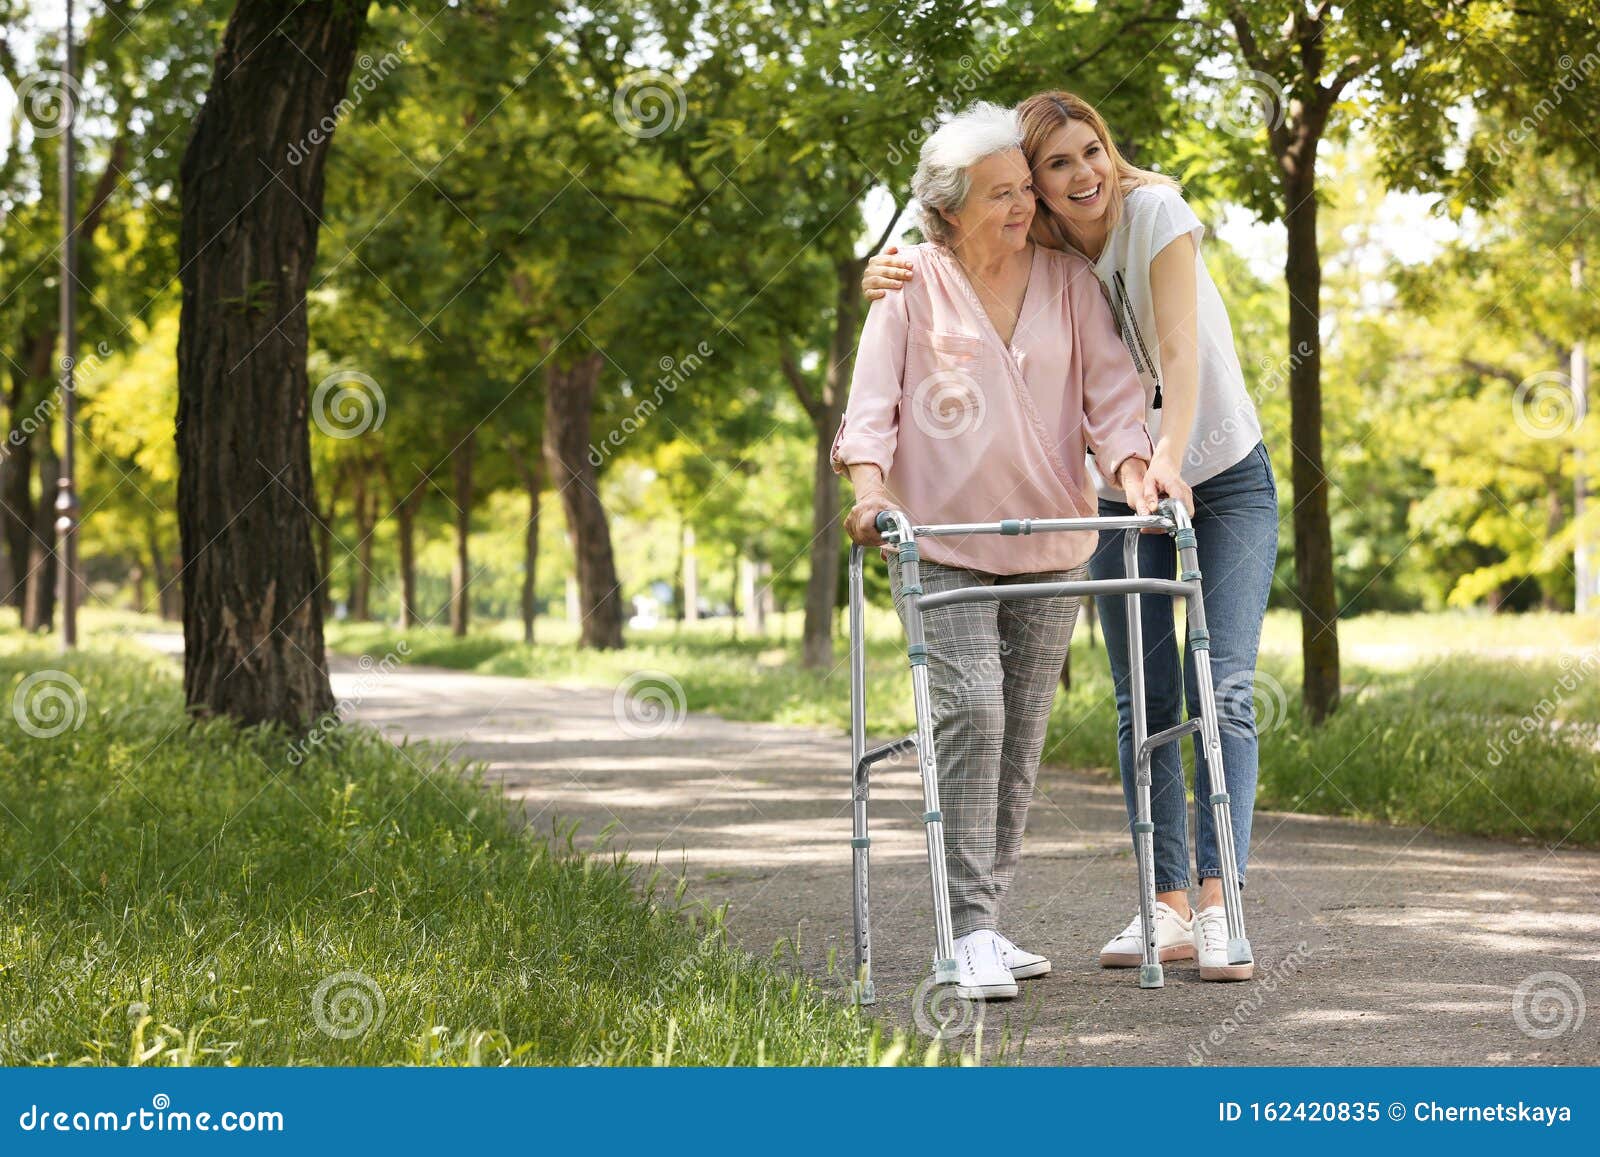 caretaker helping elderly woman with walking frame